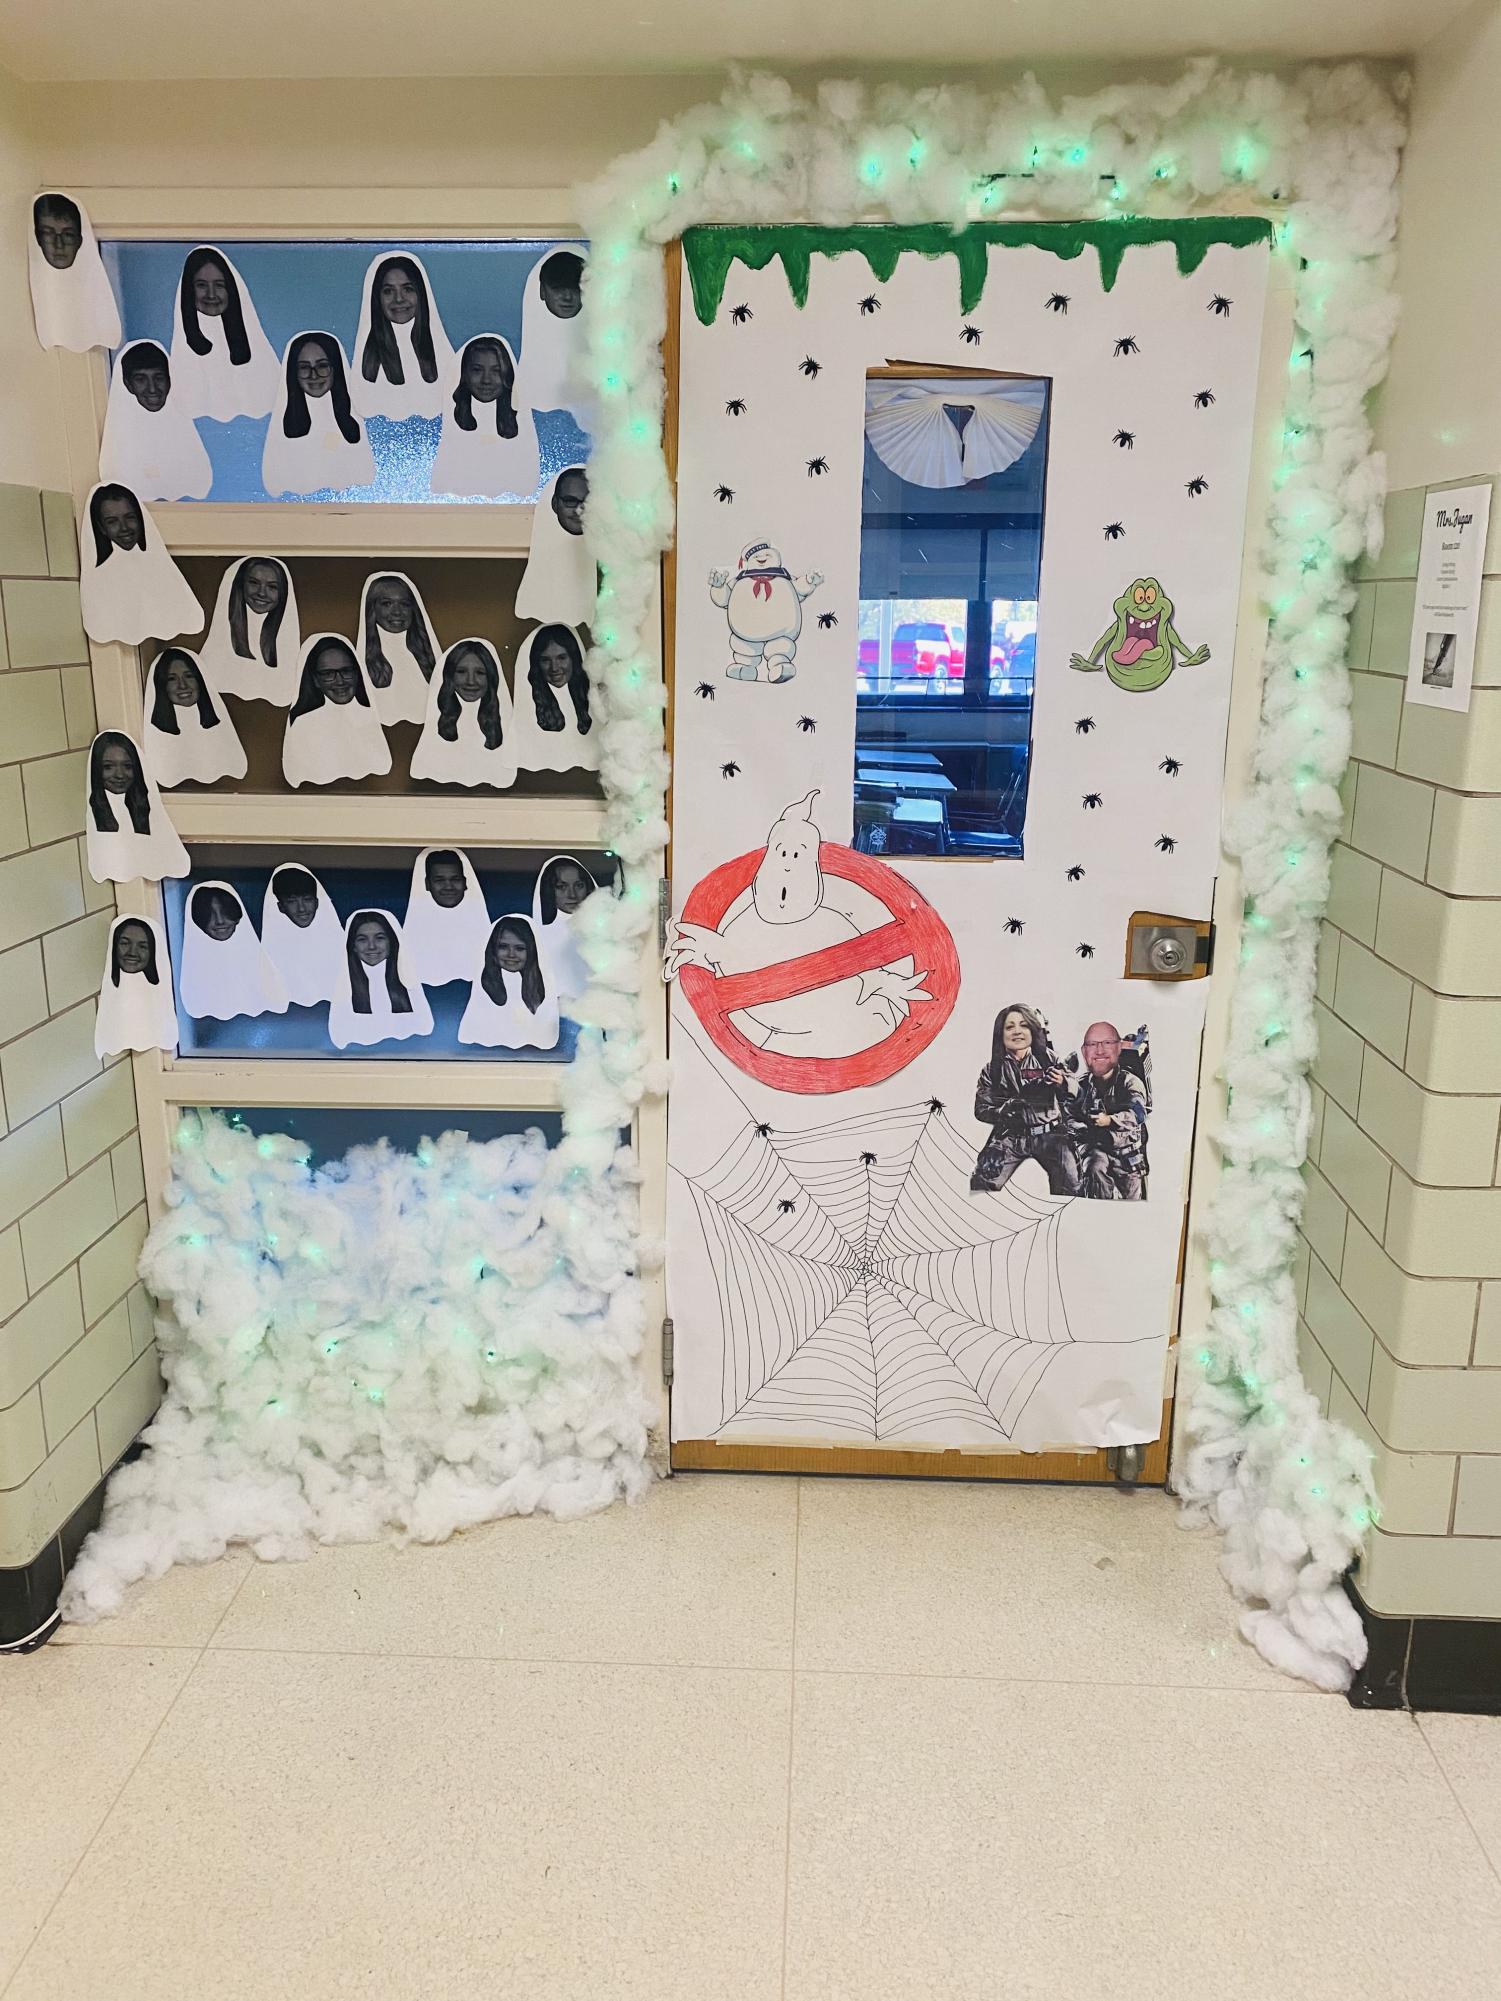 Mrs. Jugans homeroom door themed as Ghostbusters. 